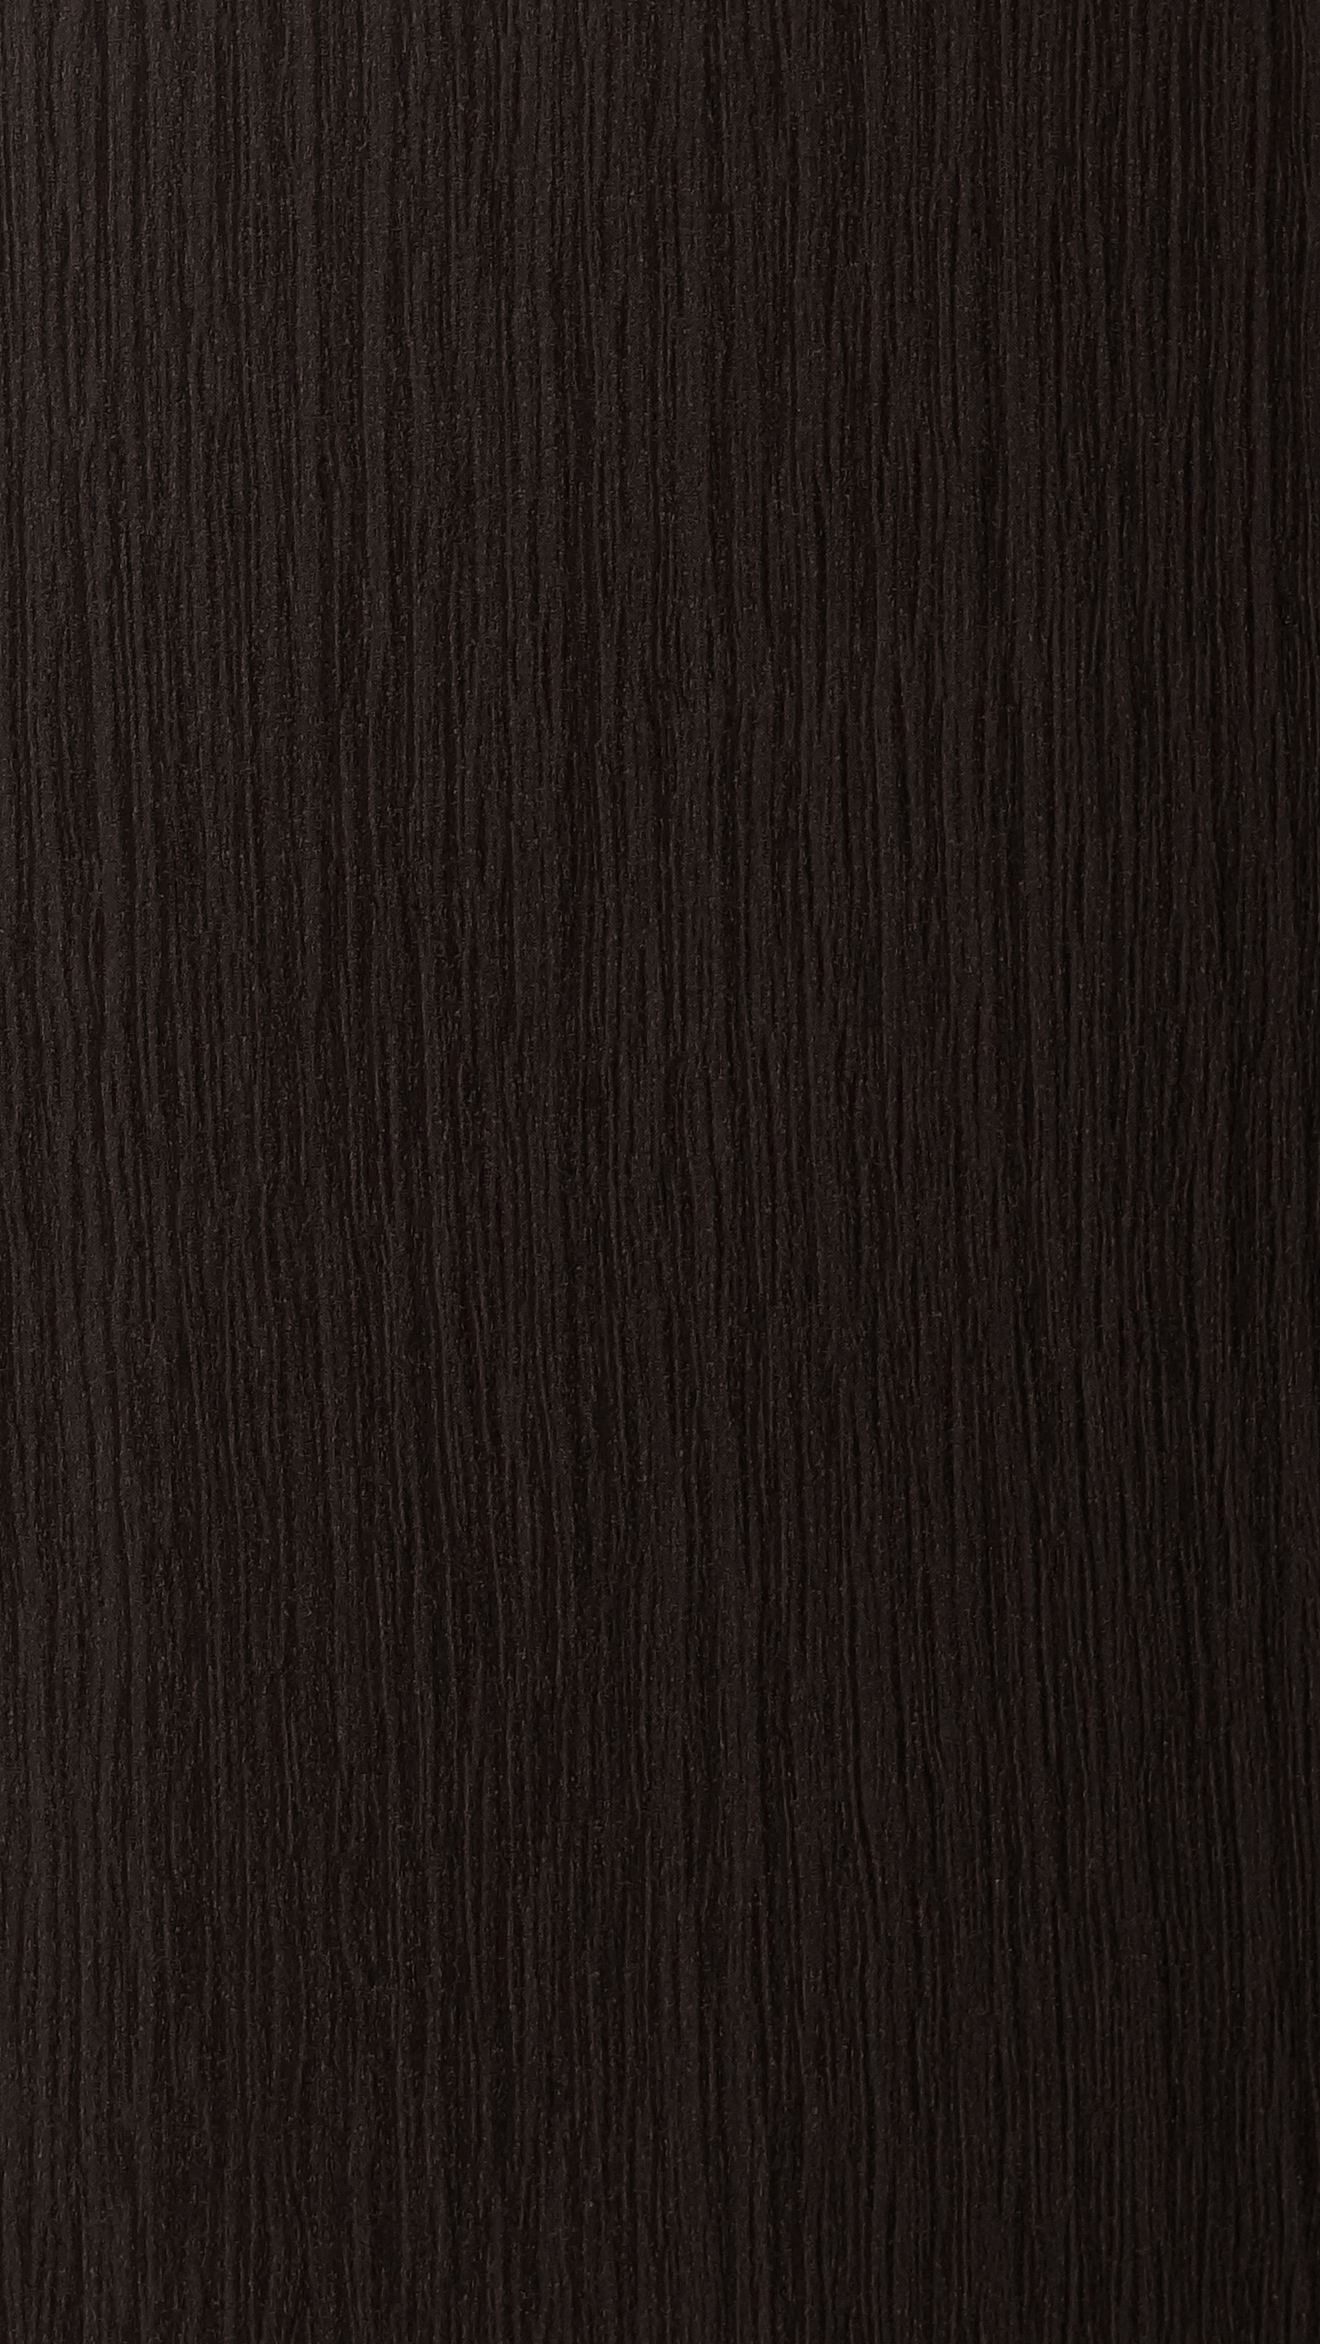 Дуб Сорано черно-коричневый н1137 st12